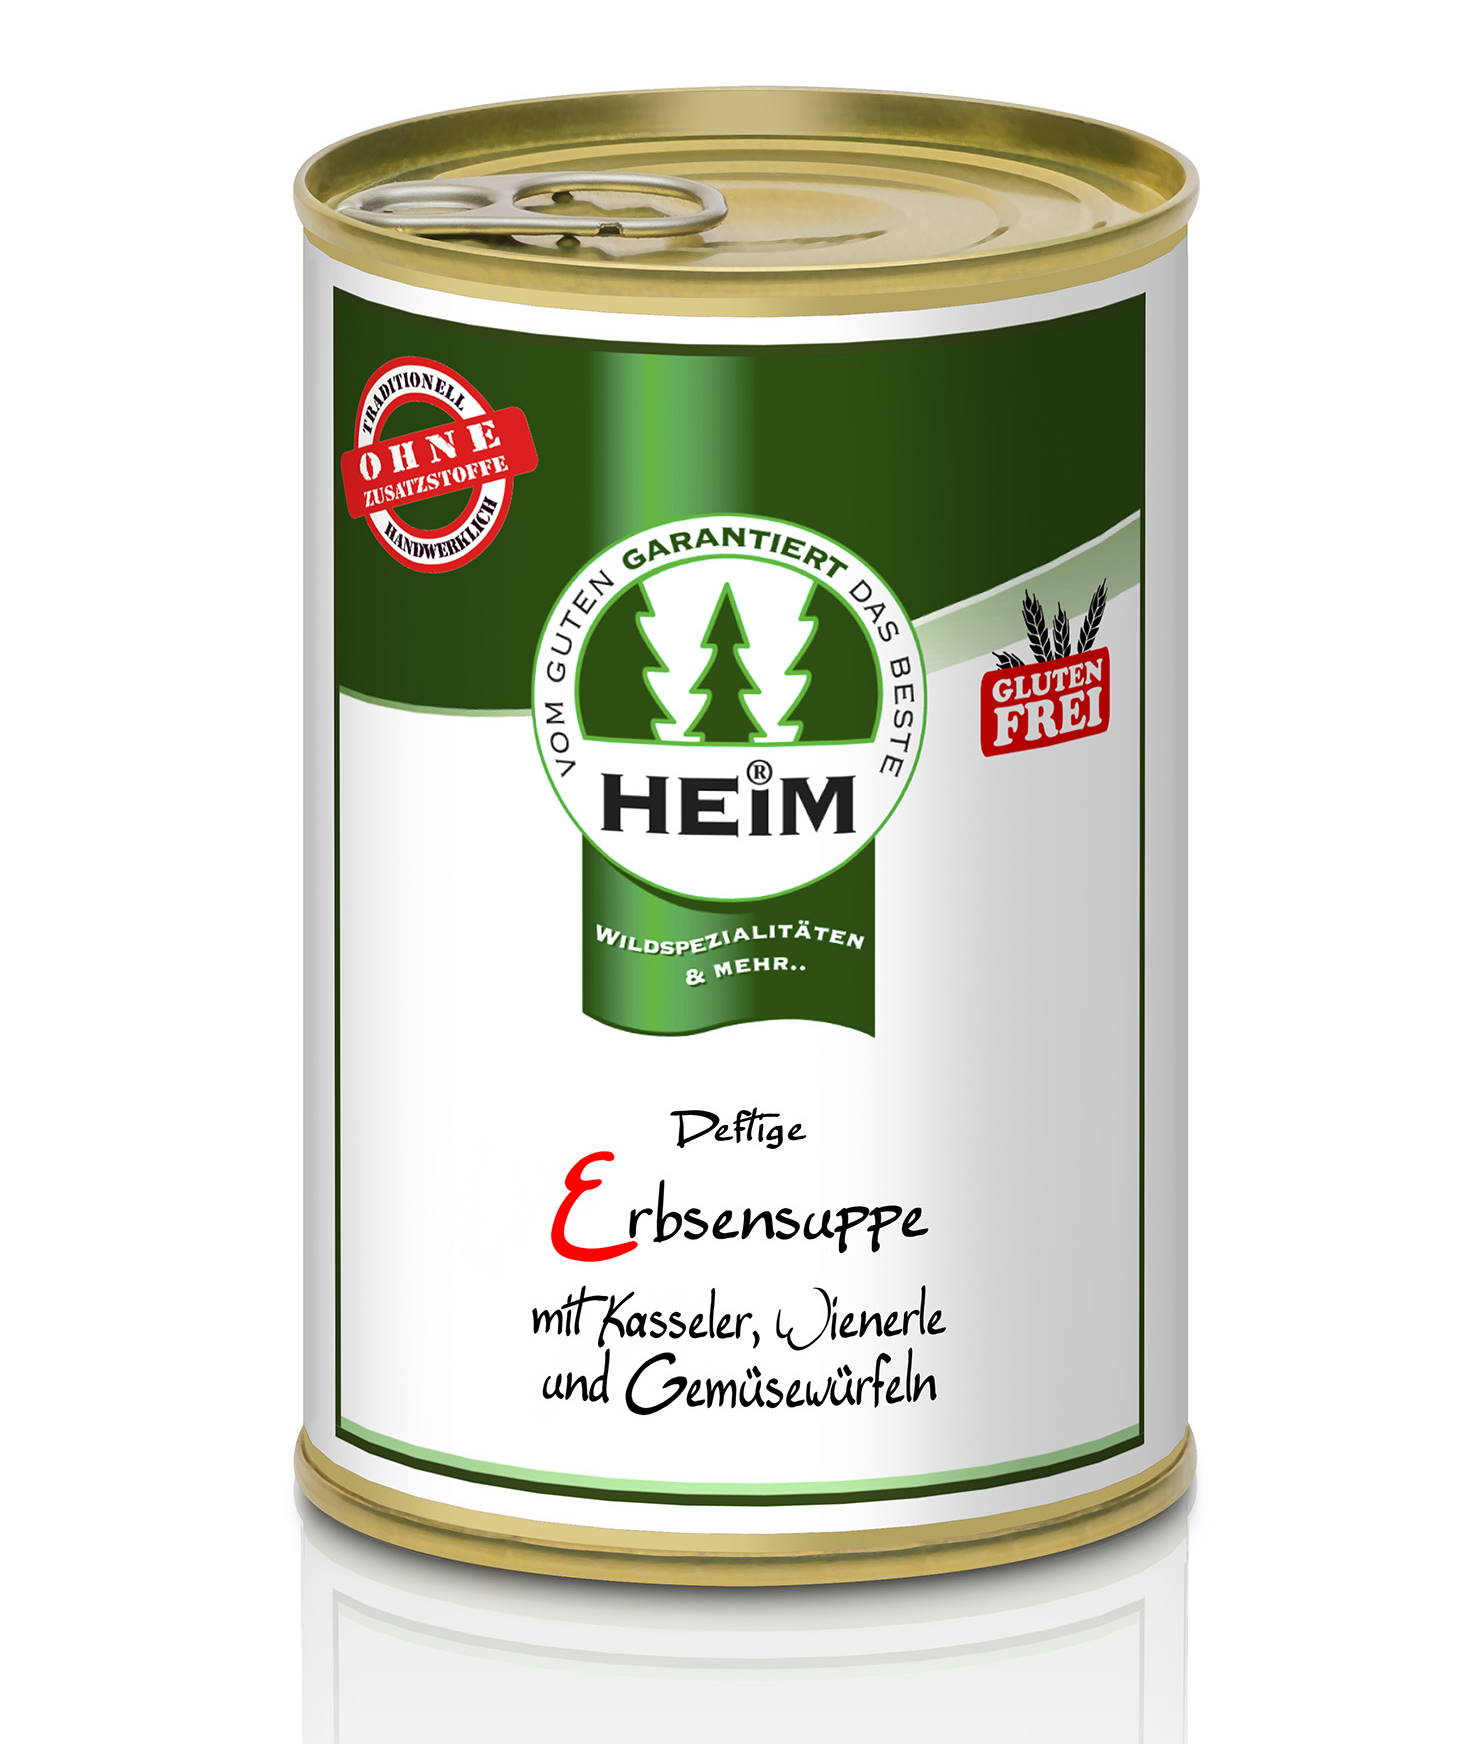 Deftige Erbsensuppe mit Kasseler, Wienerle und Gemüsewürfeln (glutenfrei), HEIM 0,4 l